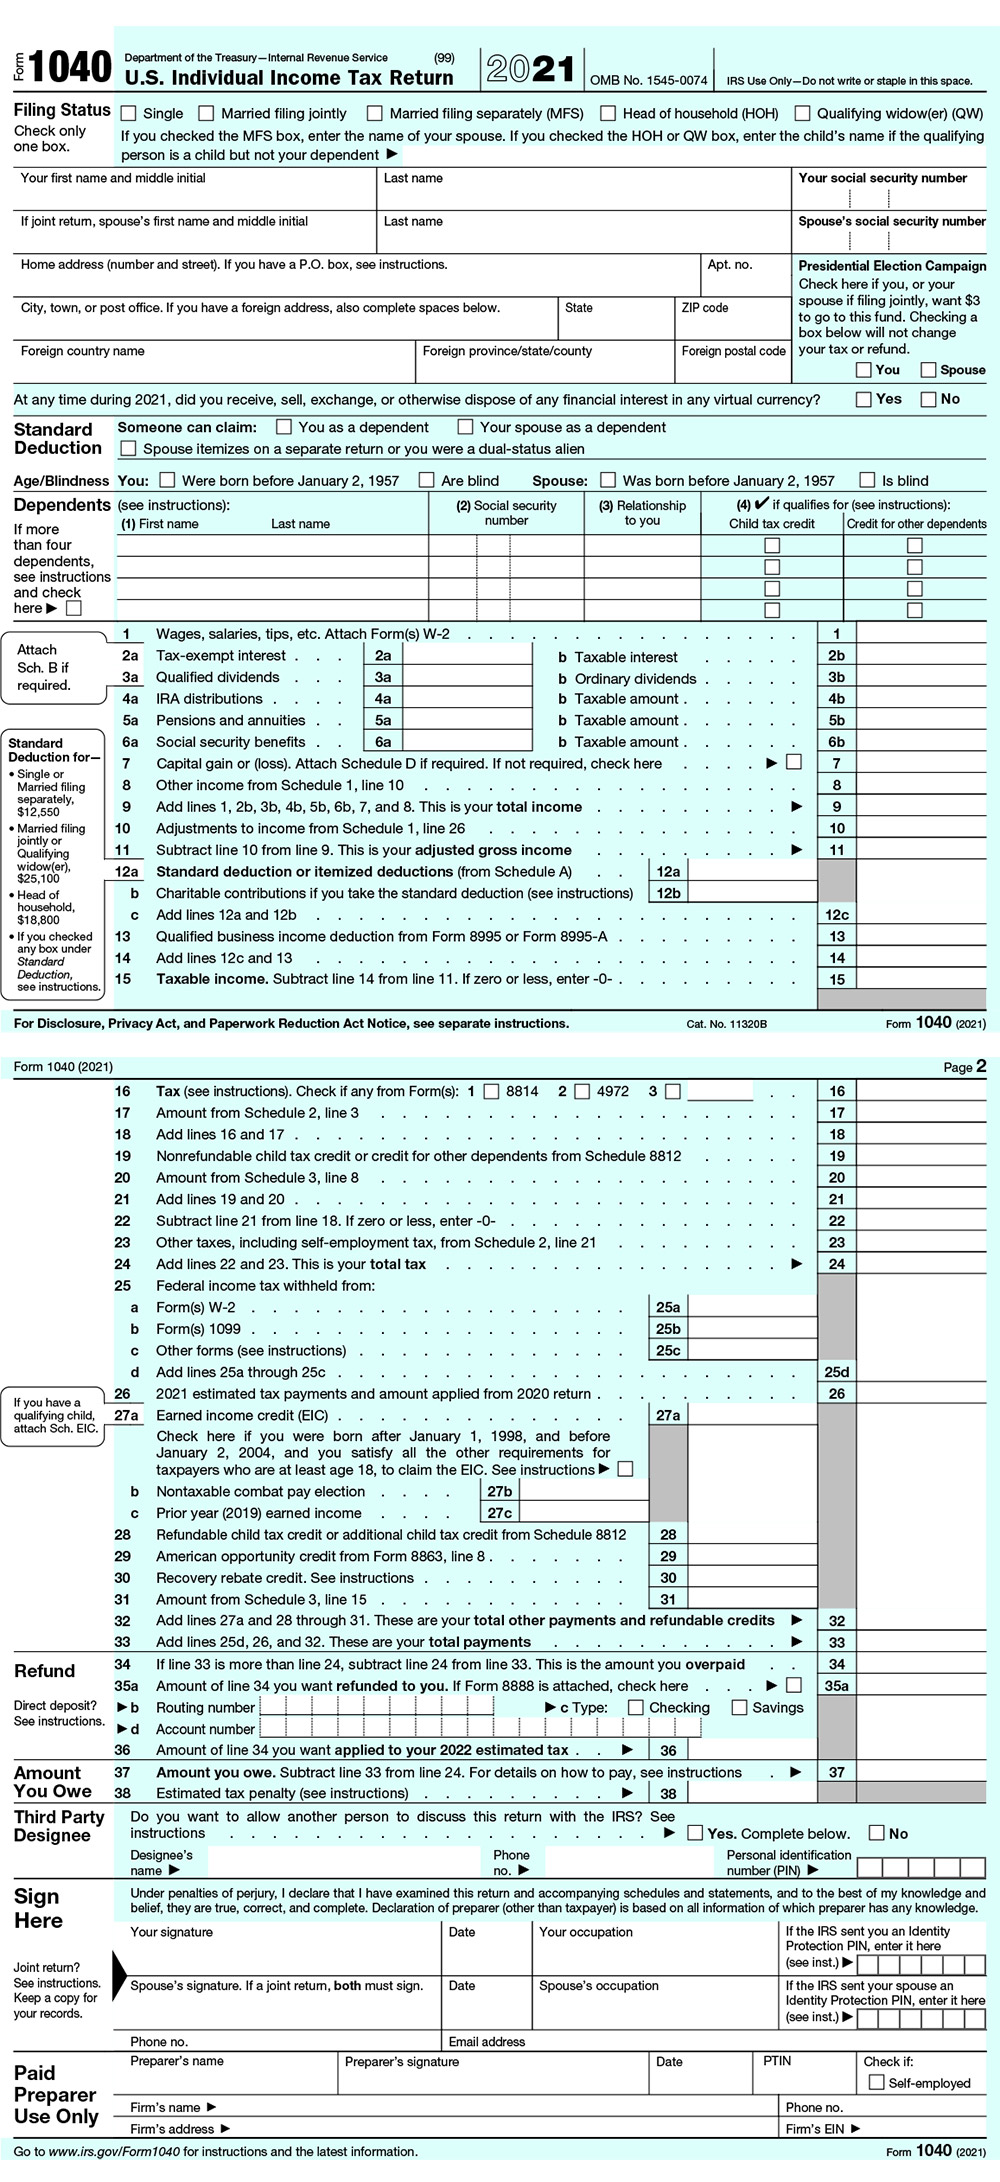 US-tax-1040-form1